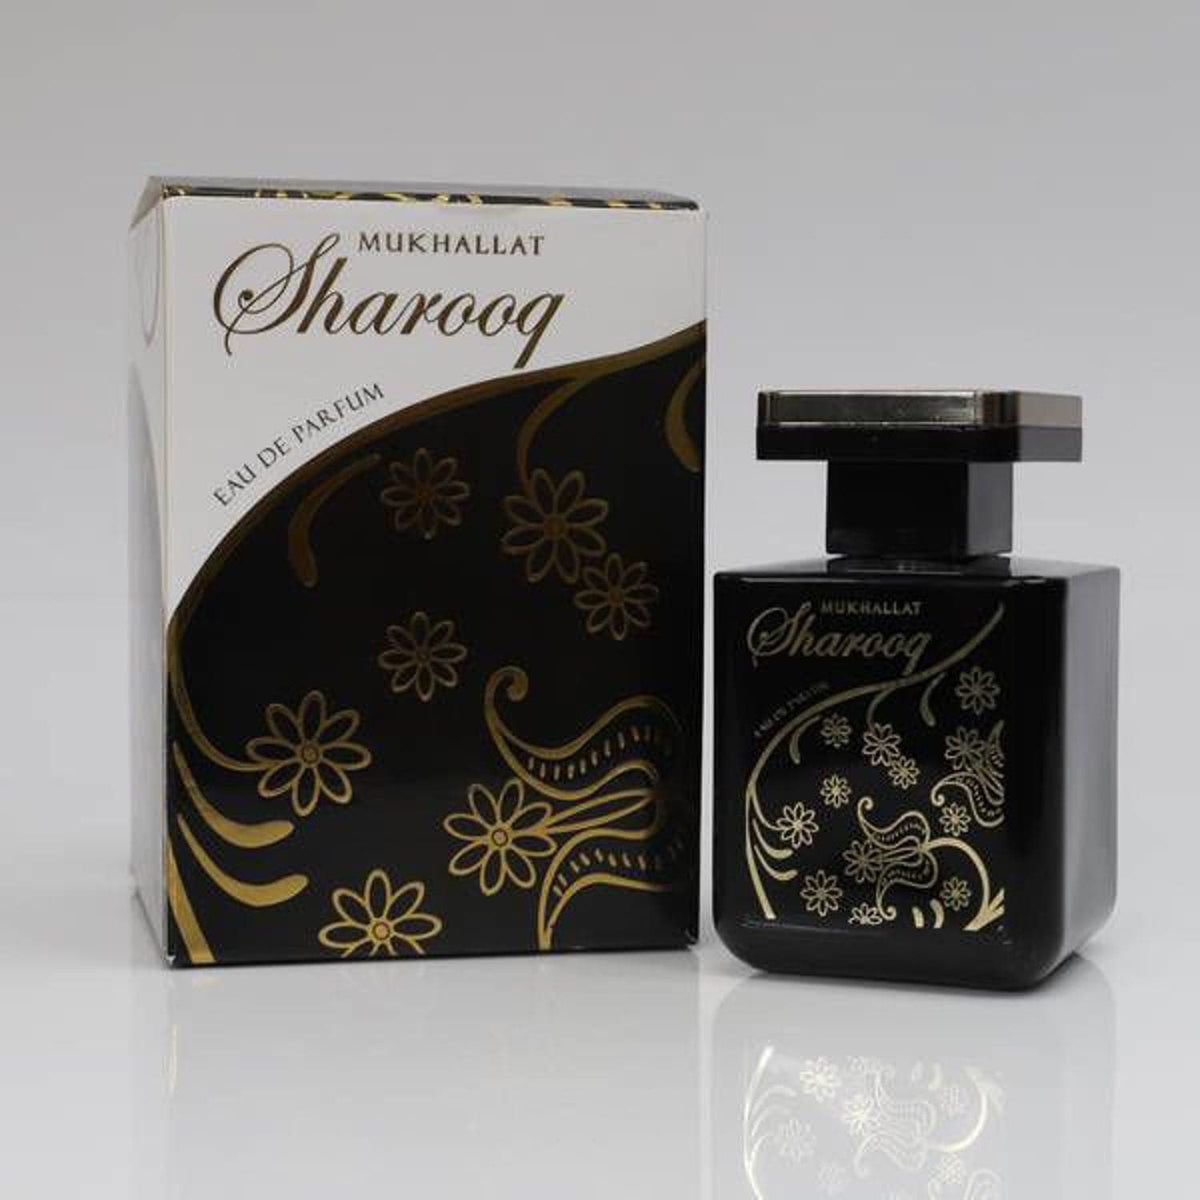 Hemani Mukhallat Sharooq Perfume 100Ml - Premium  from Hemani - Just Rs 700.00! Shop now at Cozmetica